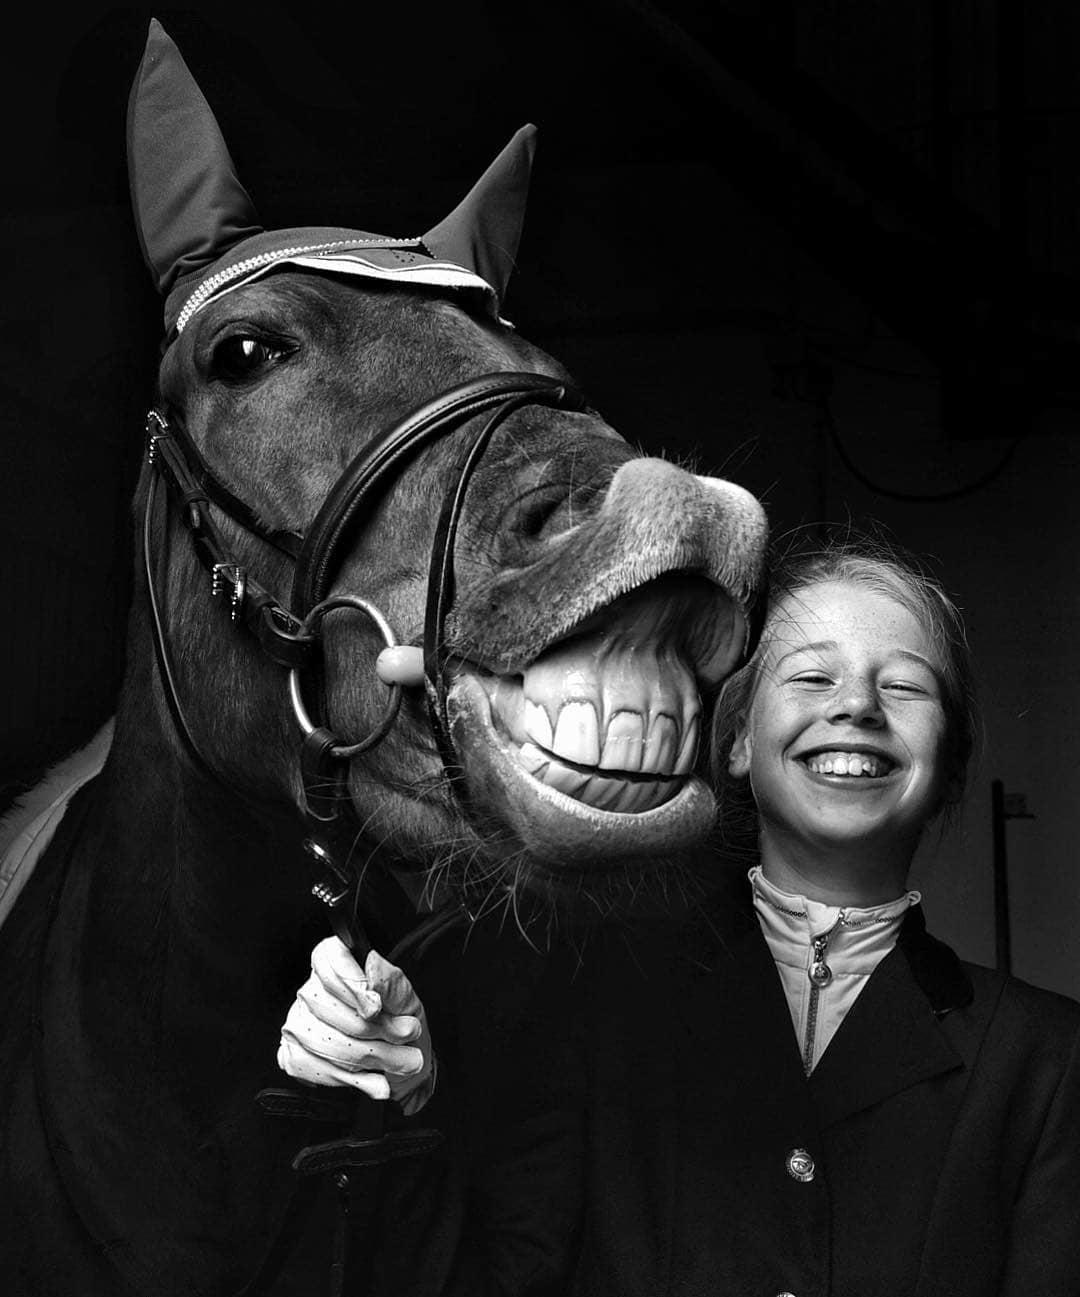  马与女孩，来自摄影师Robert Roozenbeek。 